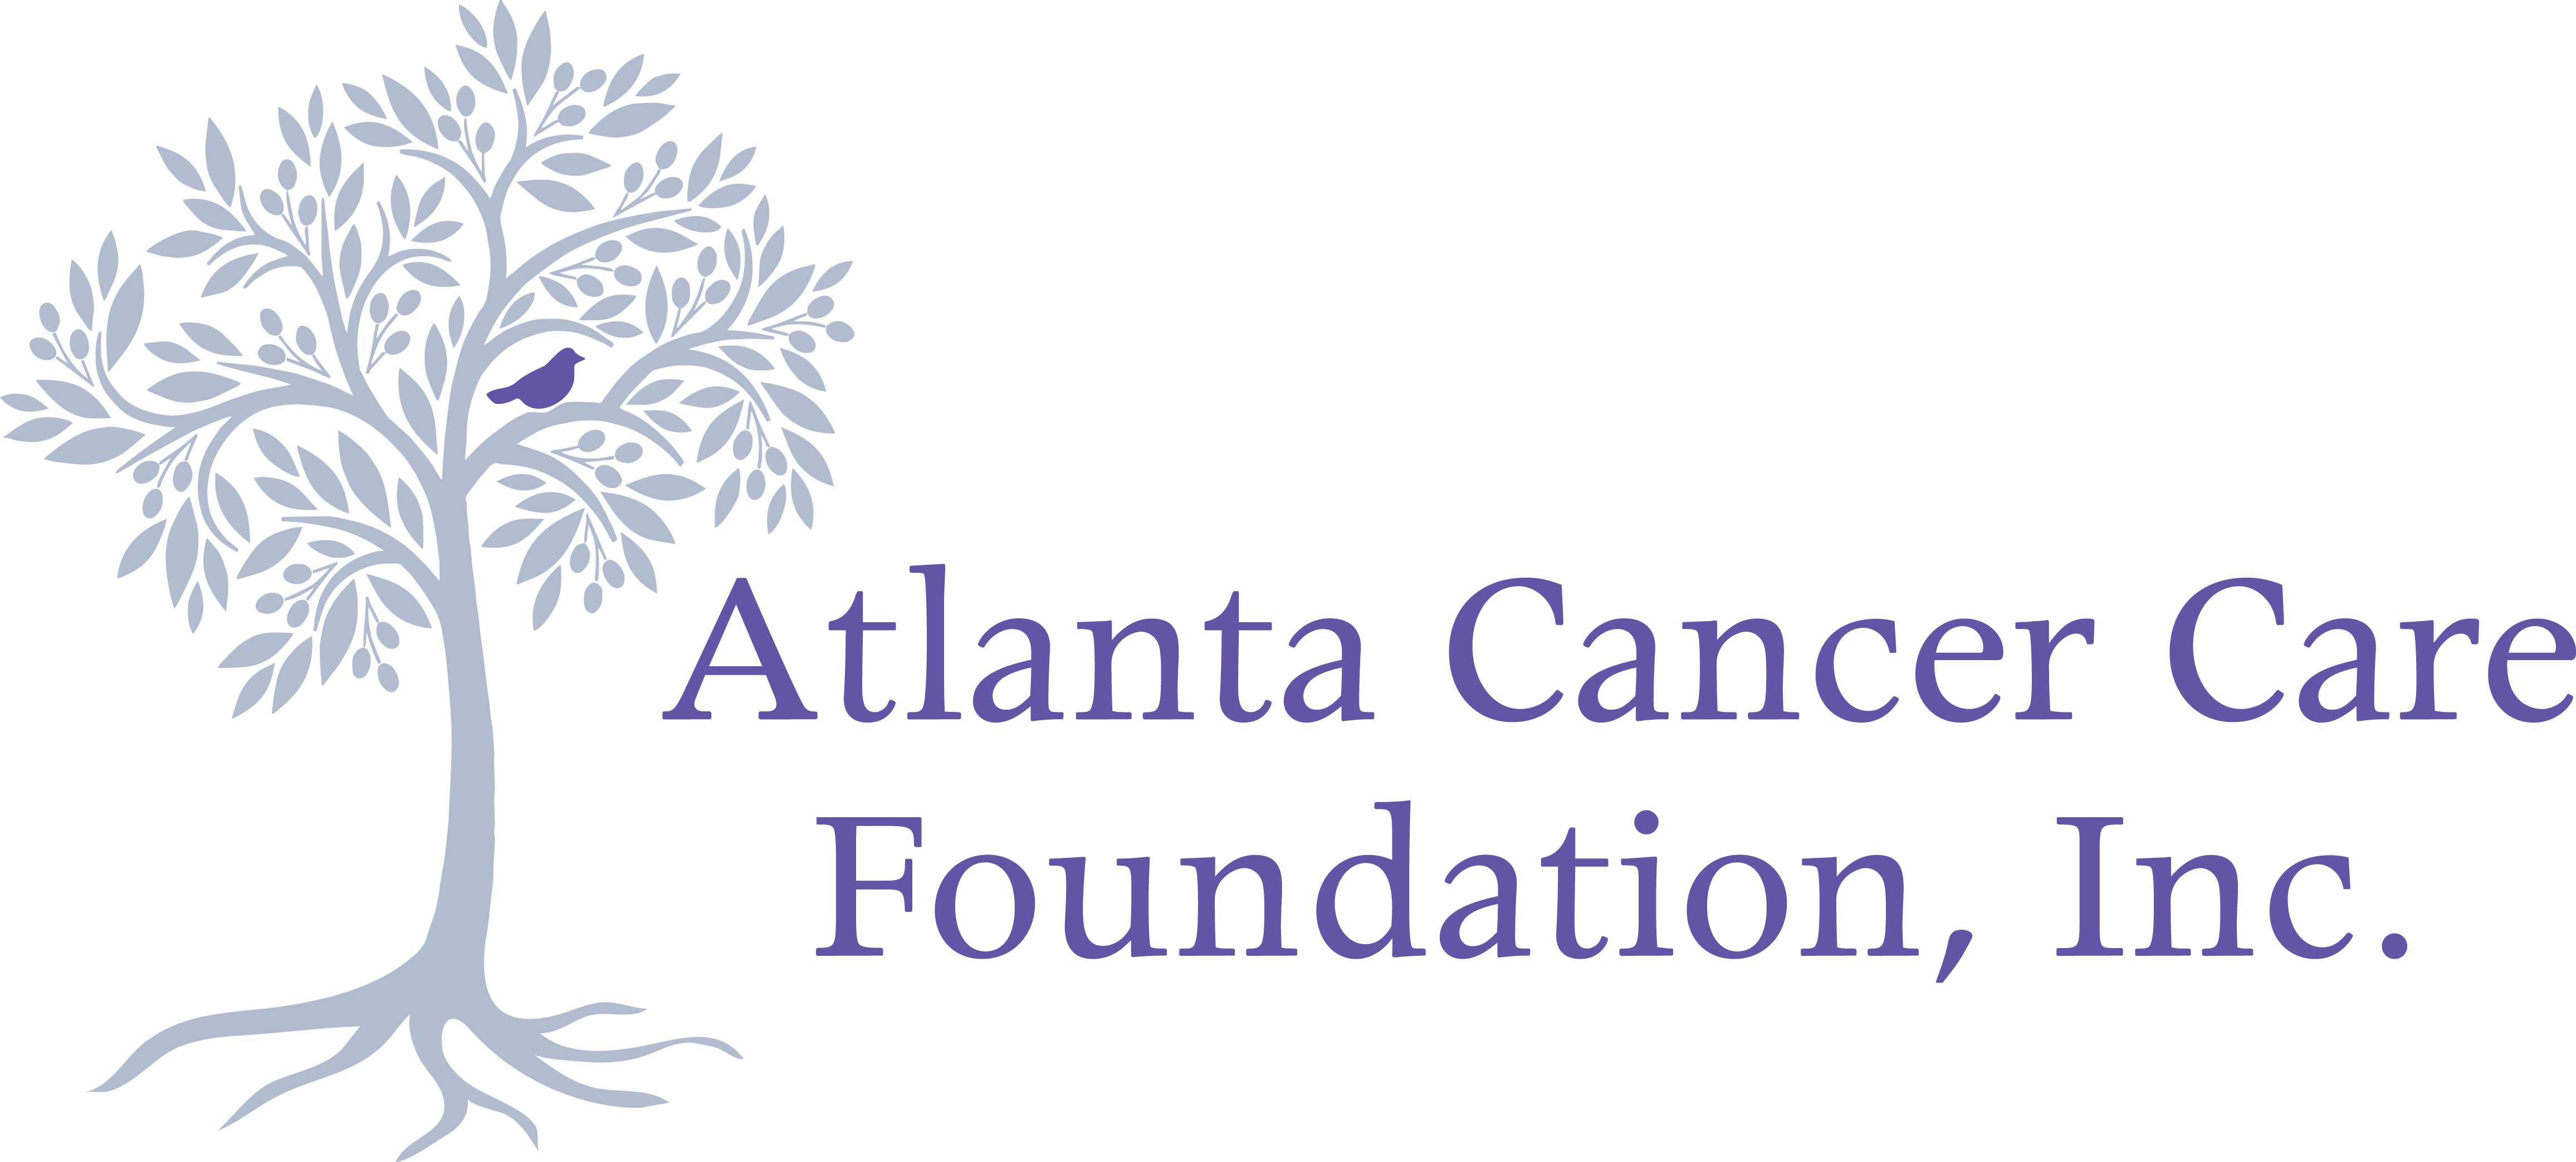 Atlanta Cancer Care Foundation, Inc. logo